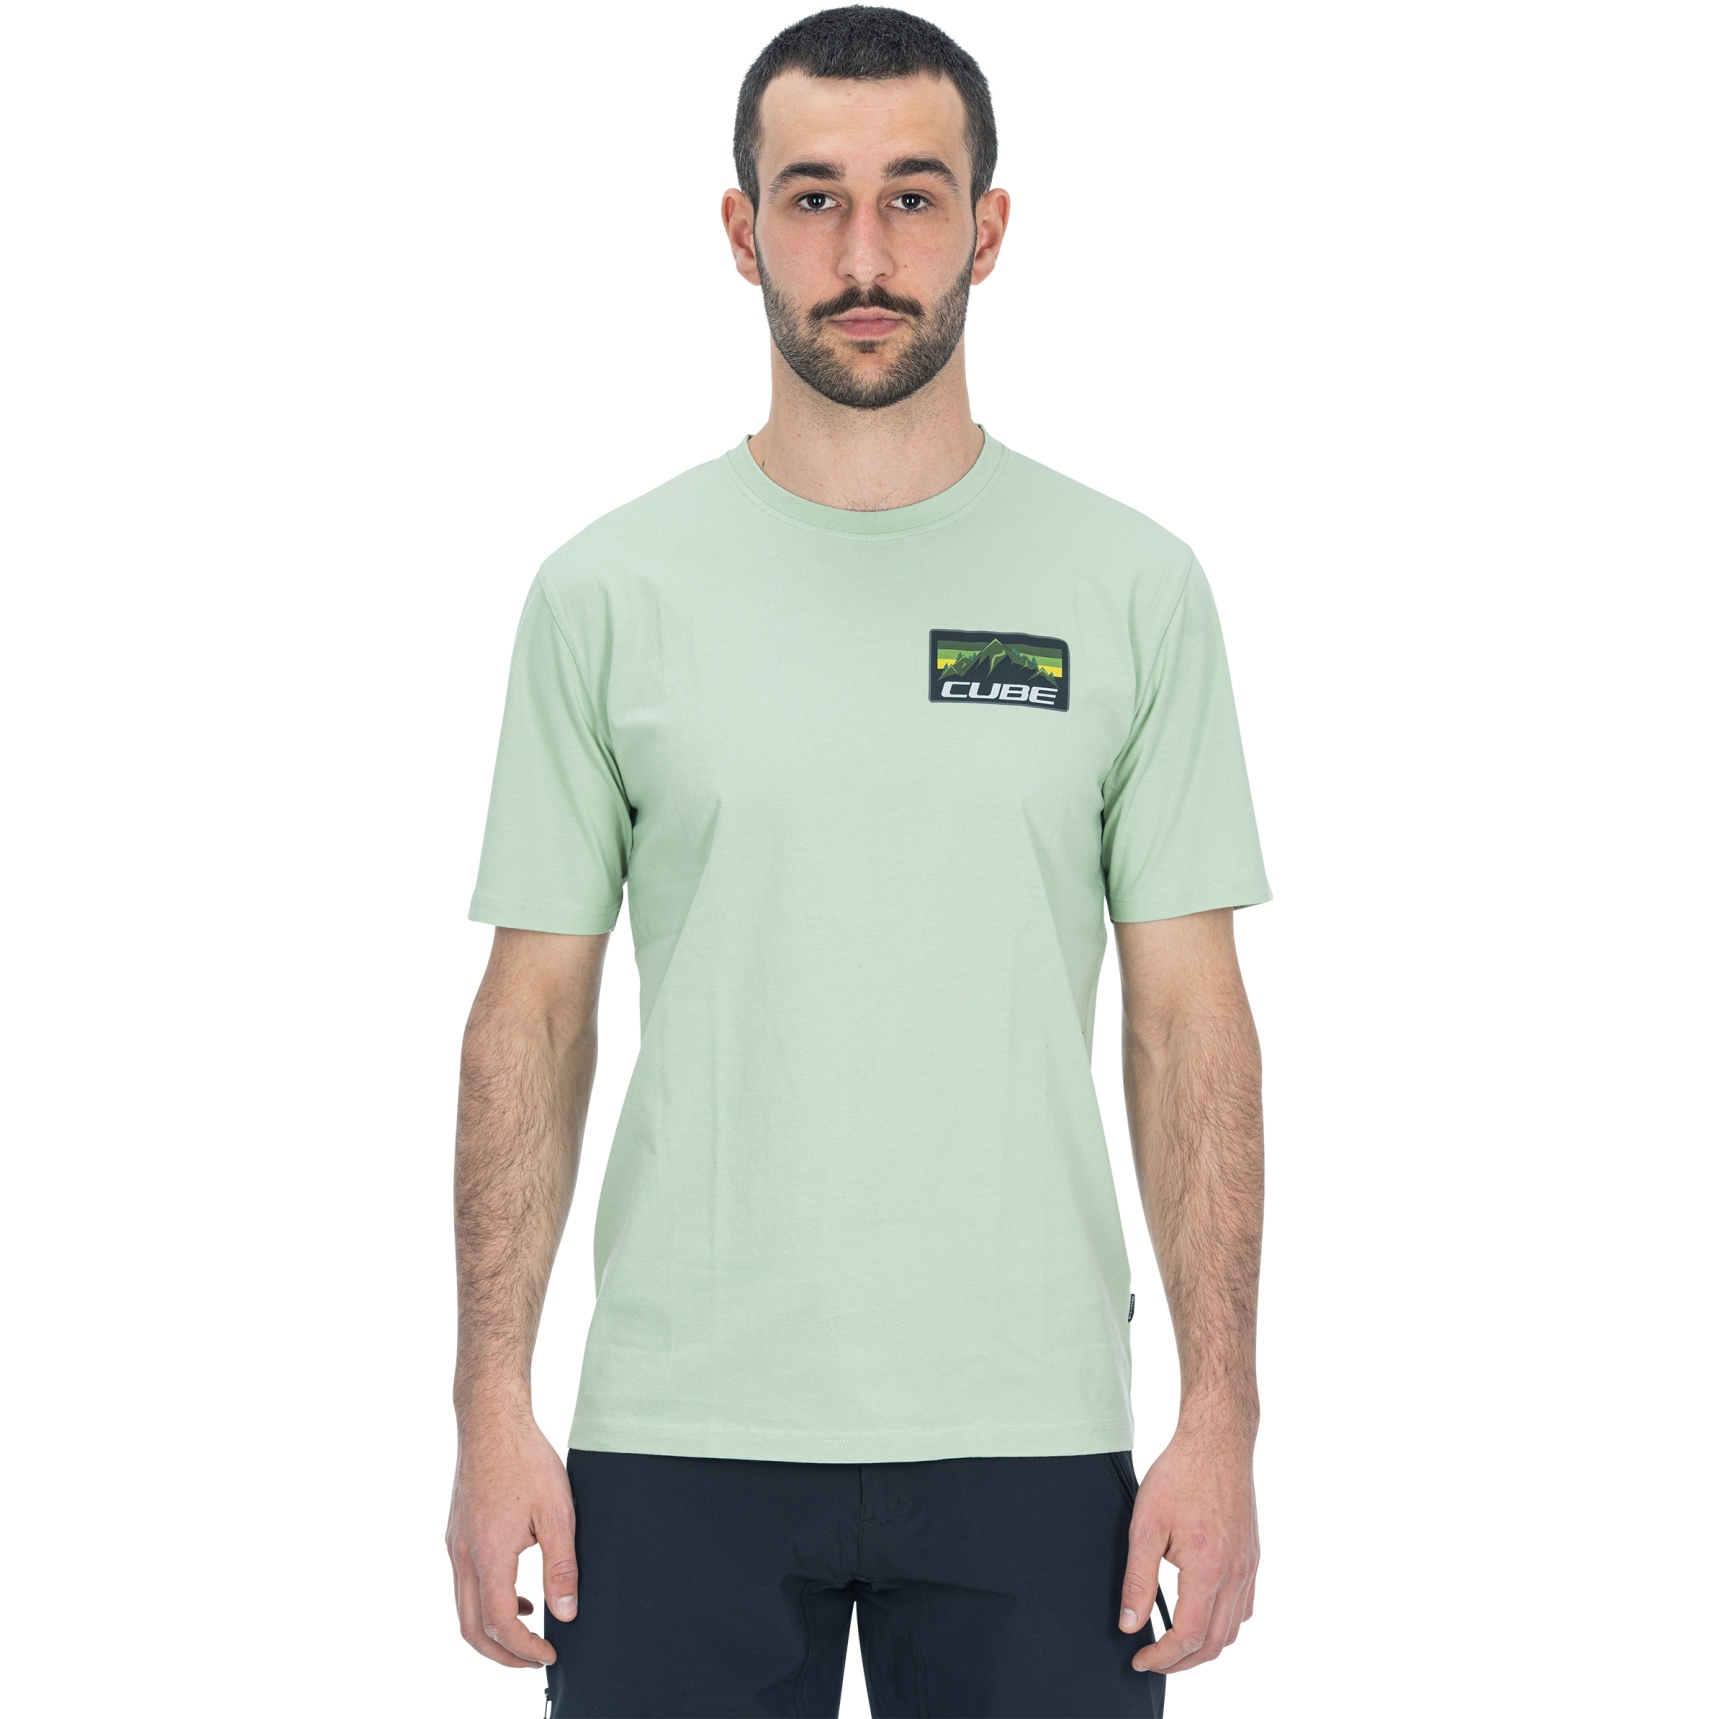 Produktbild von CUBE Organic Summit T-Shirt Herren - grün